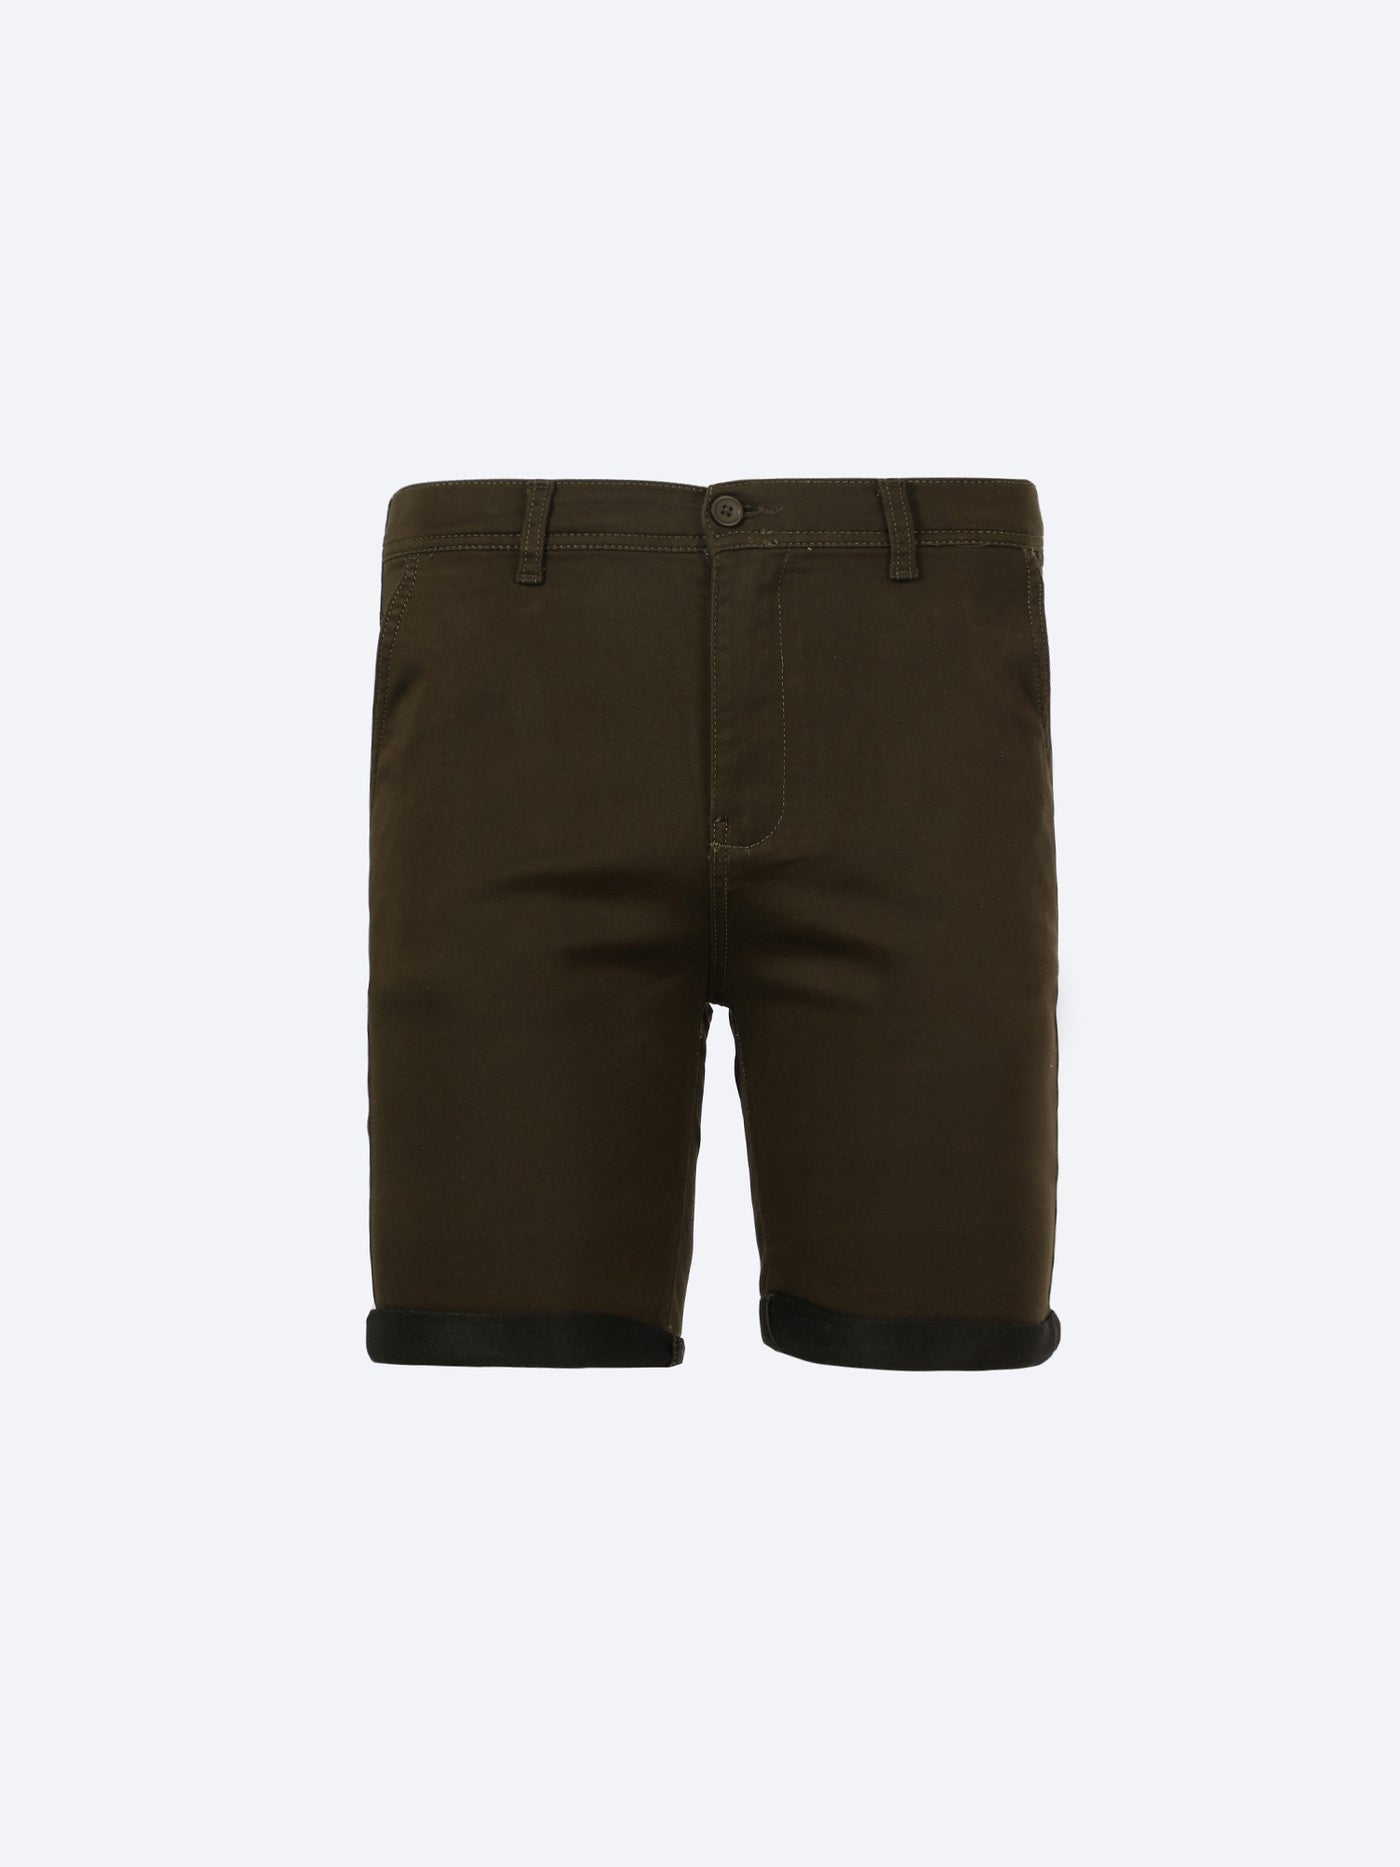 Shorts - Pocketed - Folded Hems